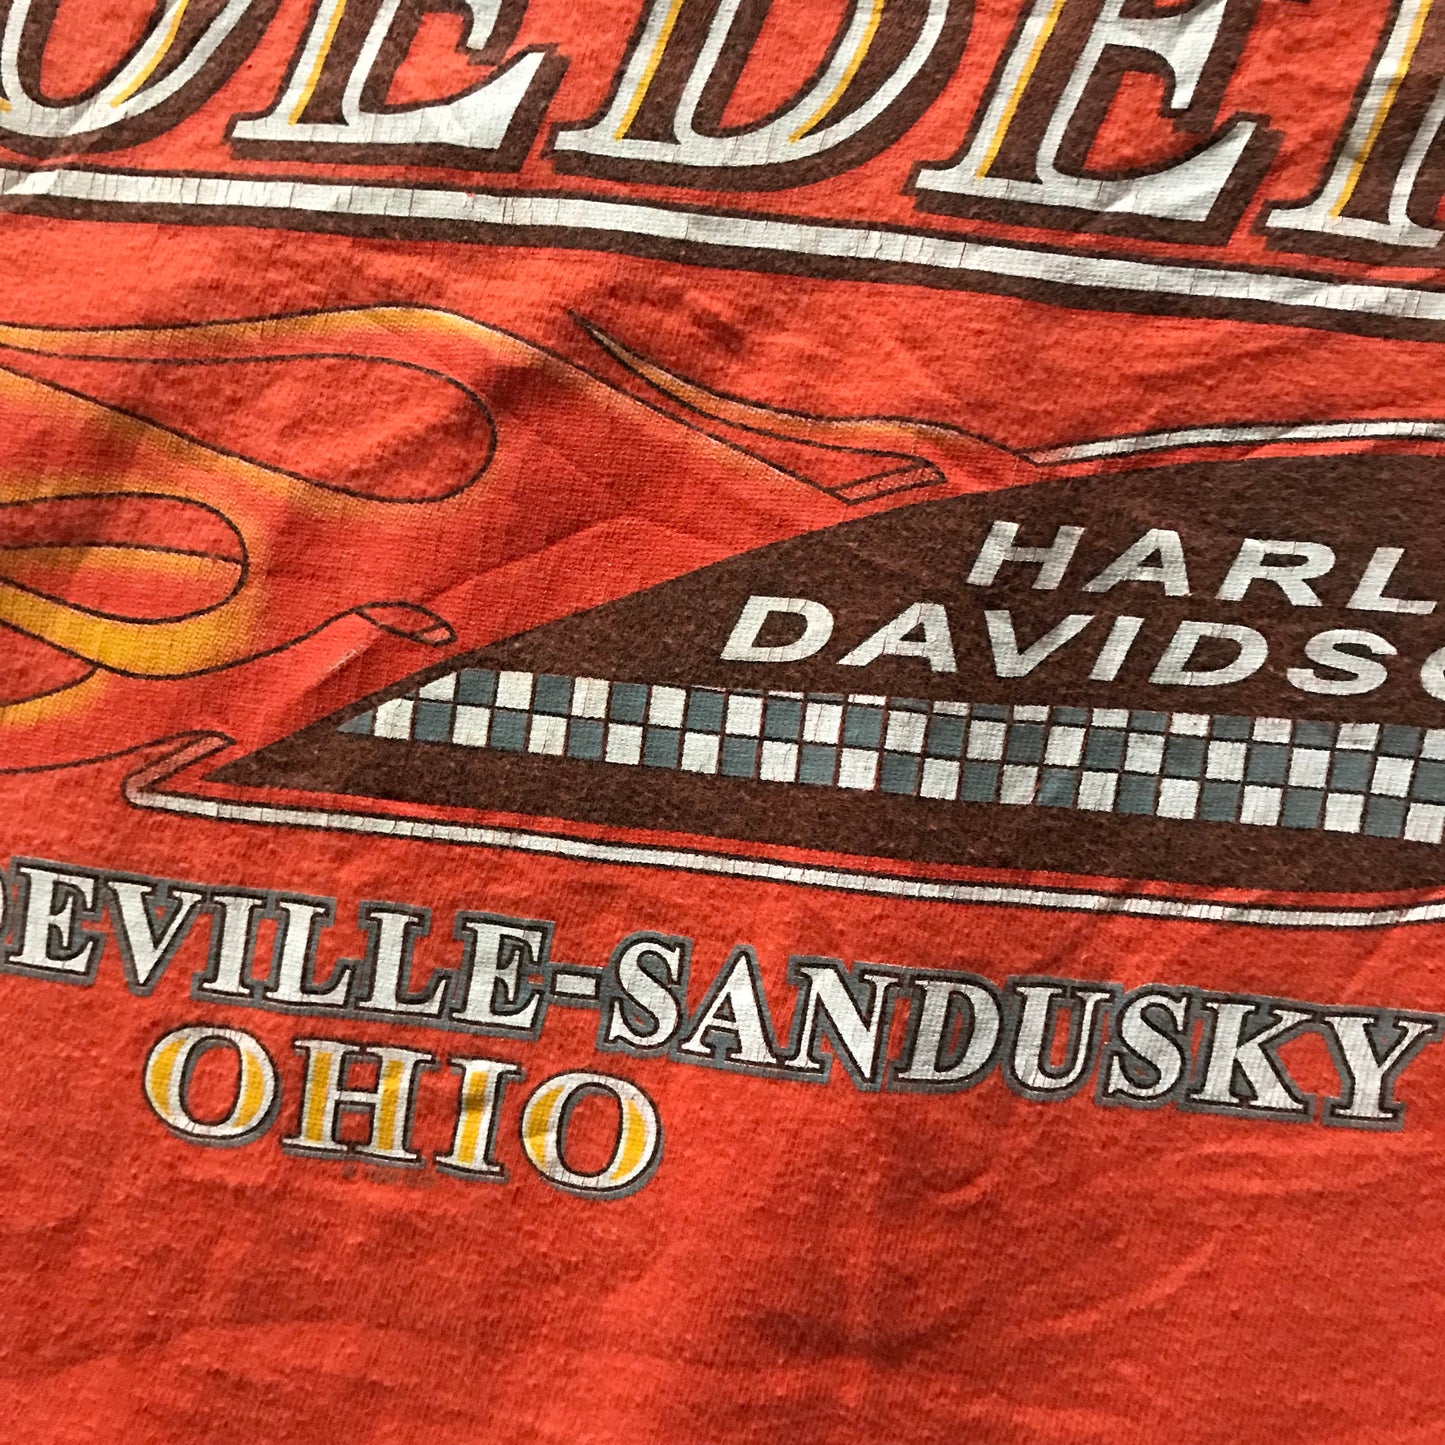 Harley Davidson 1999 T-shirt